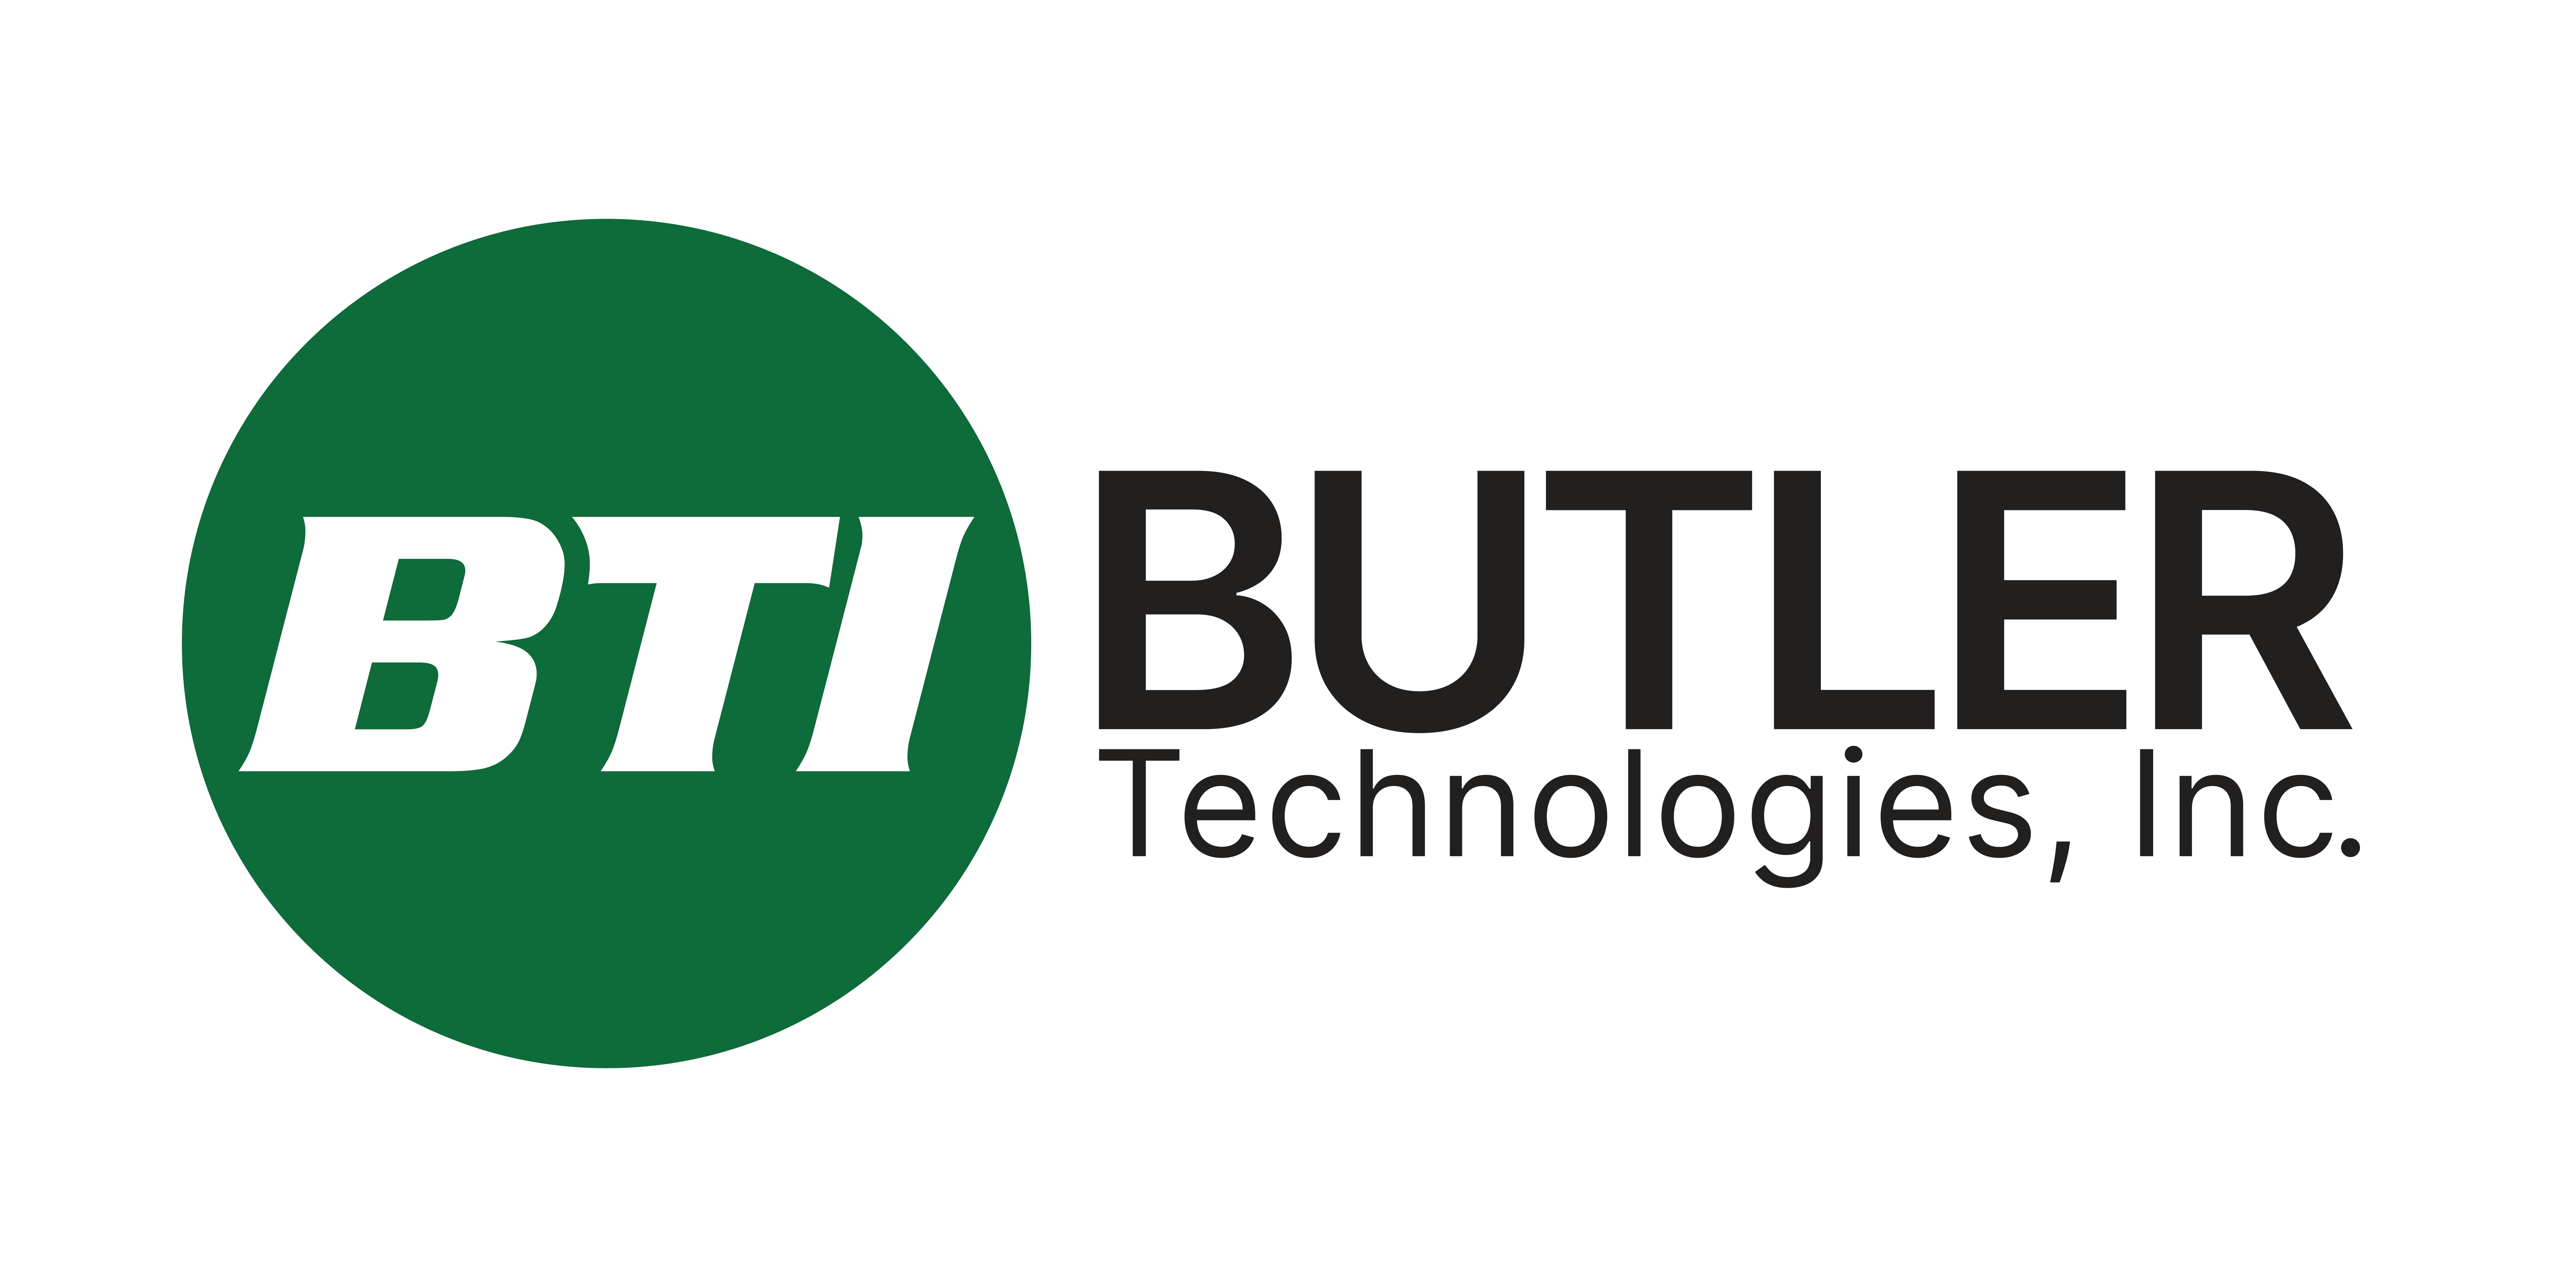 Butler Technologies, Inc. logo